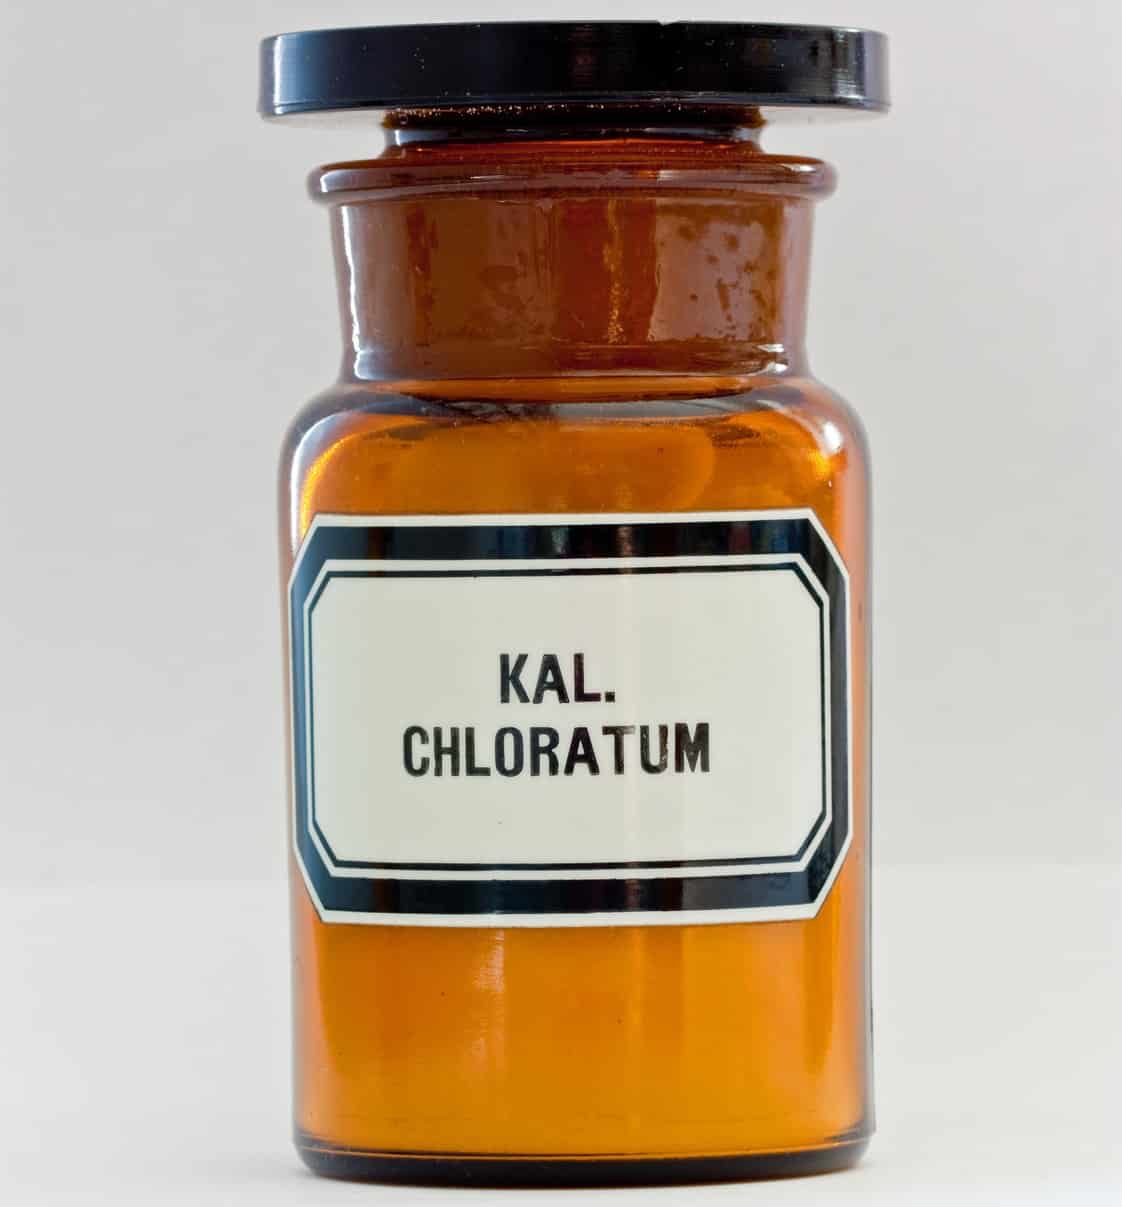 Kaliumchlorid in der Natur. Aus dem Mineralsalz wird das Globuli zur homöopathischen Behandlung hergestellt. Das Globuli Kalium chloratum wird in der Homöopathie bei Krankheiten wie Aphten, Nebenhöhlenentzündung und Zahnfleischentzündung eingesetzt. Fotolia © monropic